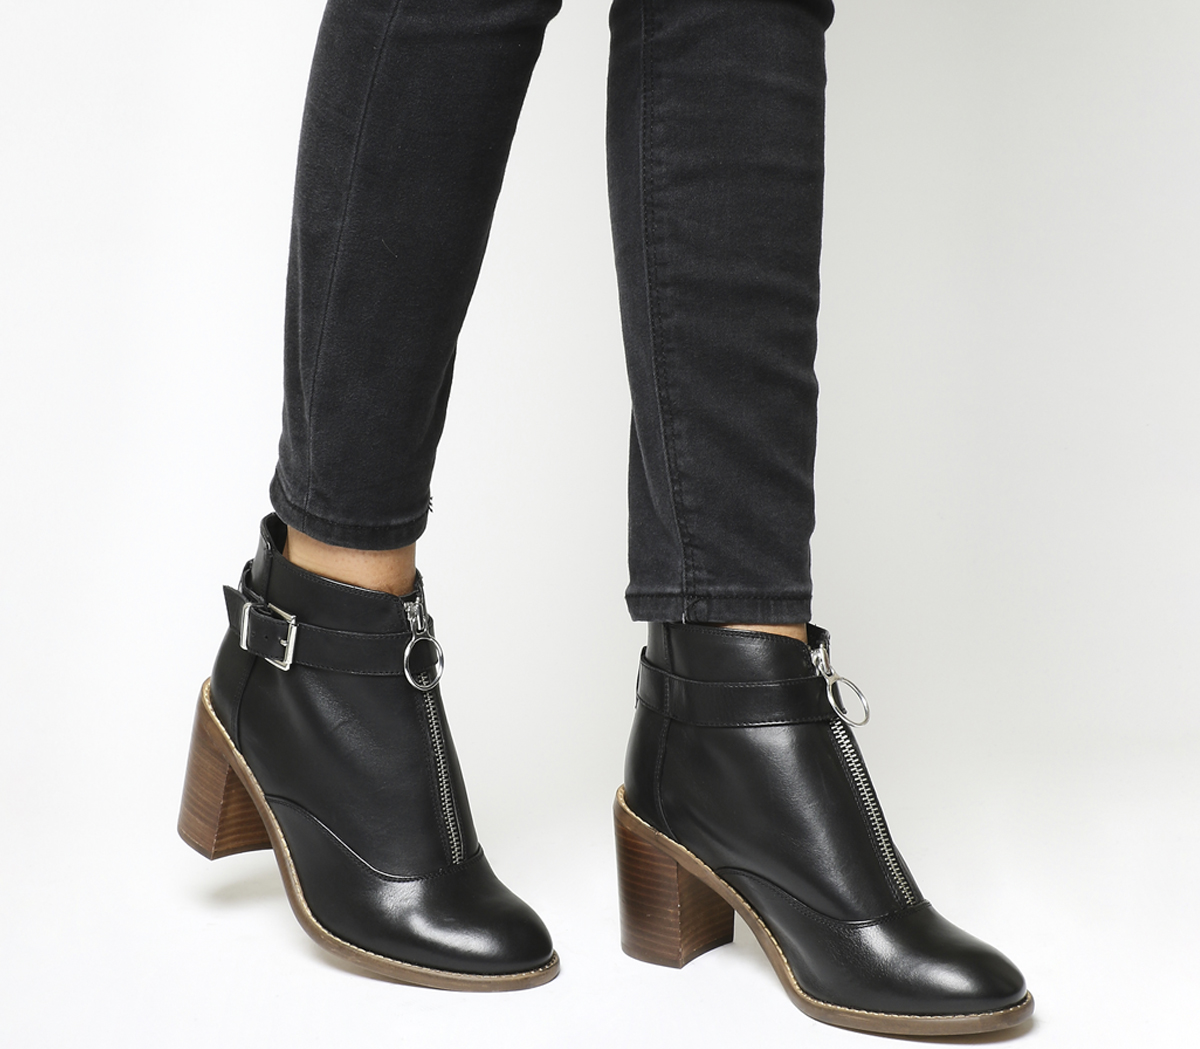 OFFICELottie Front Zip Smart BootsBlack Leather